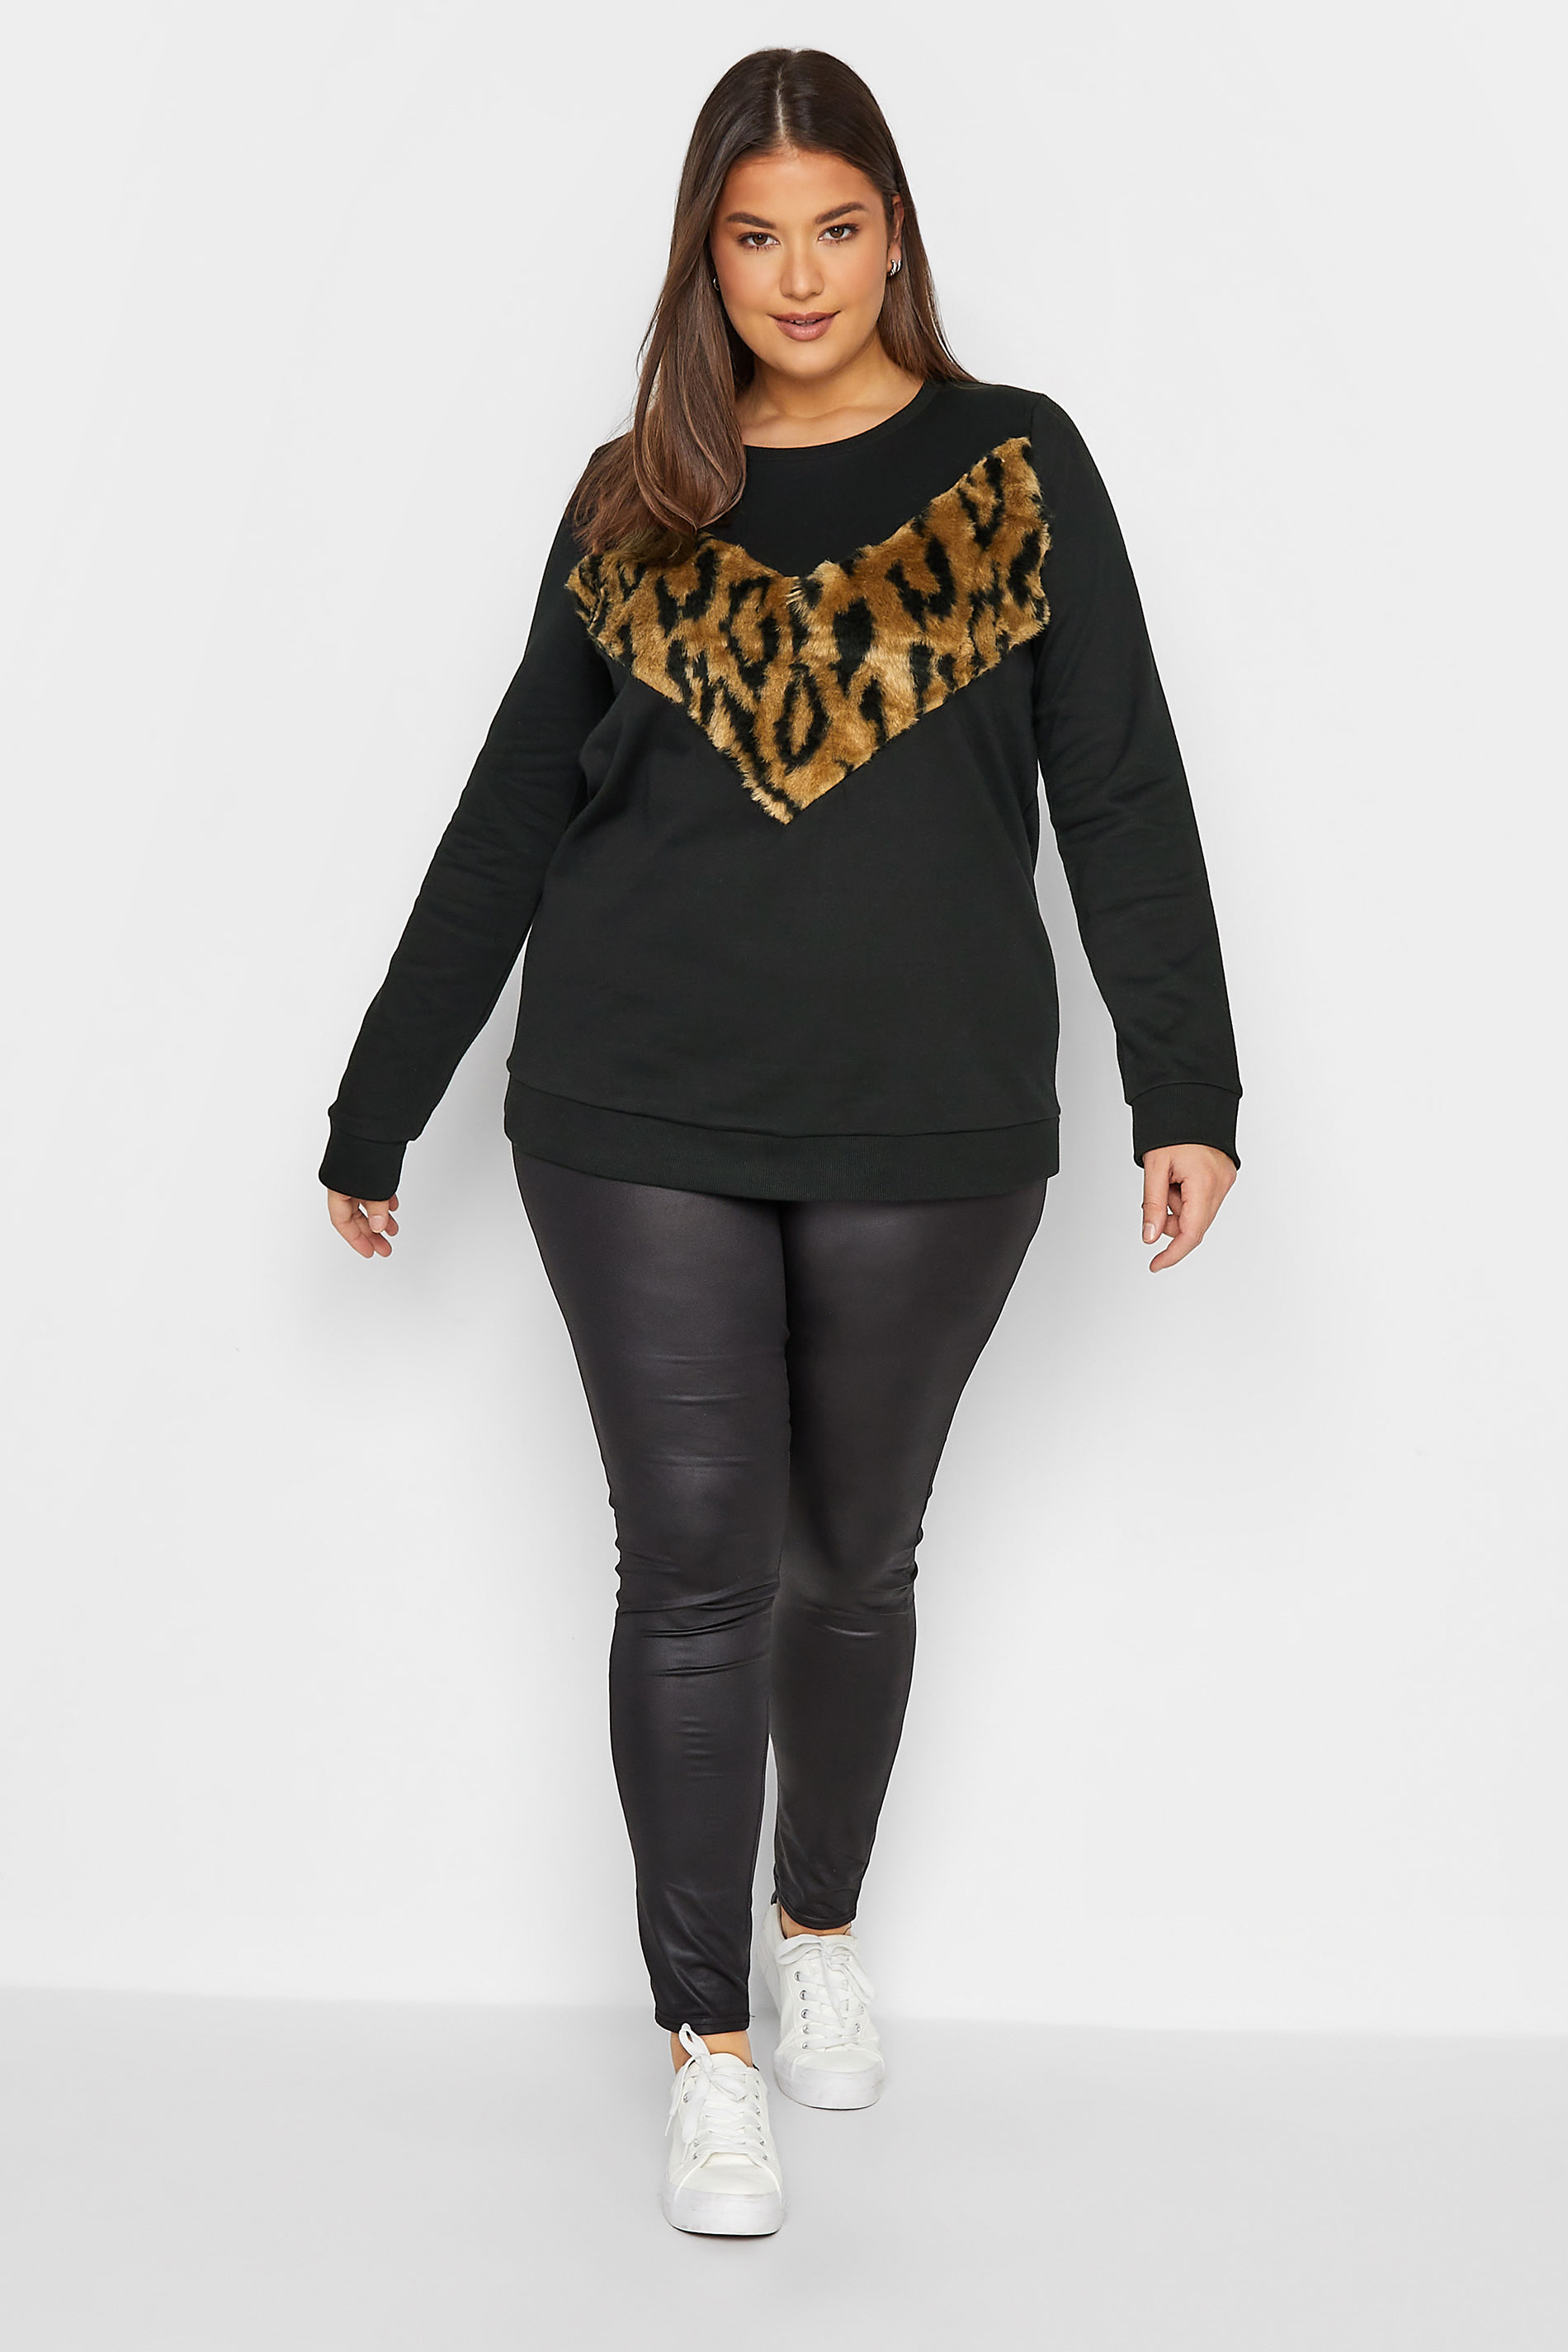 LTS Tall Women's Black Leopard Print Panel Sweatshirt | Long Tall Sally 2